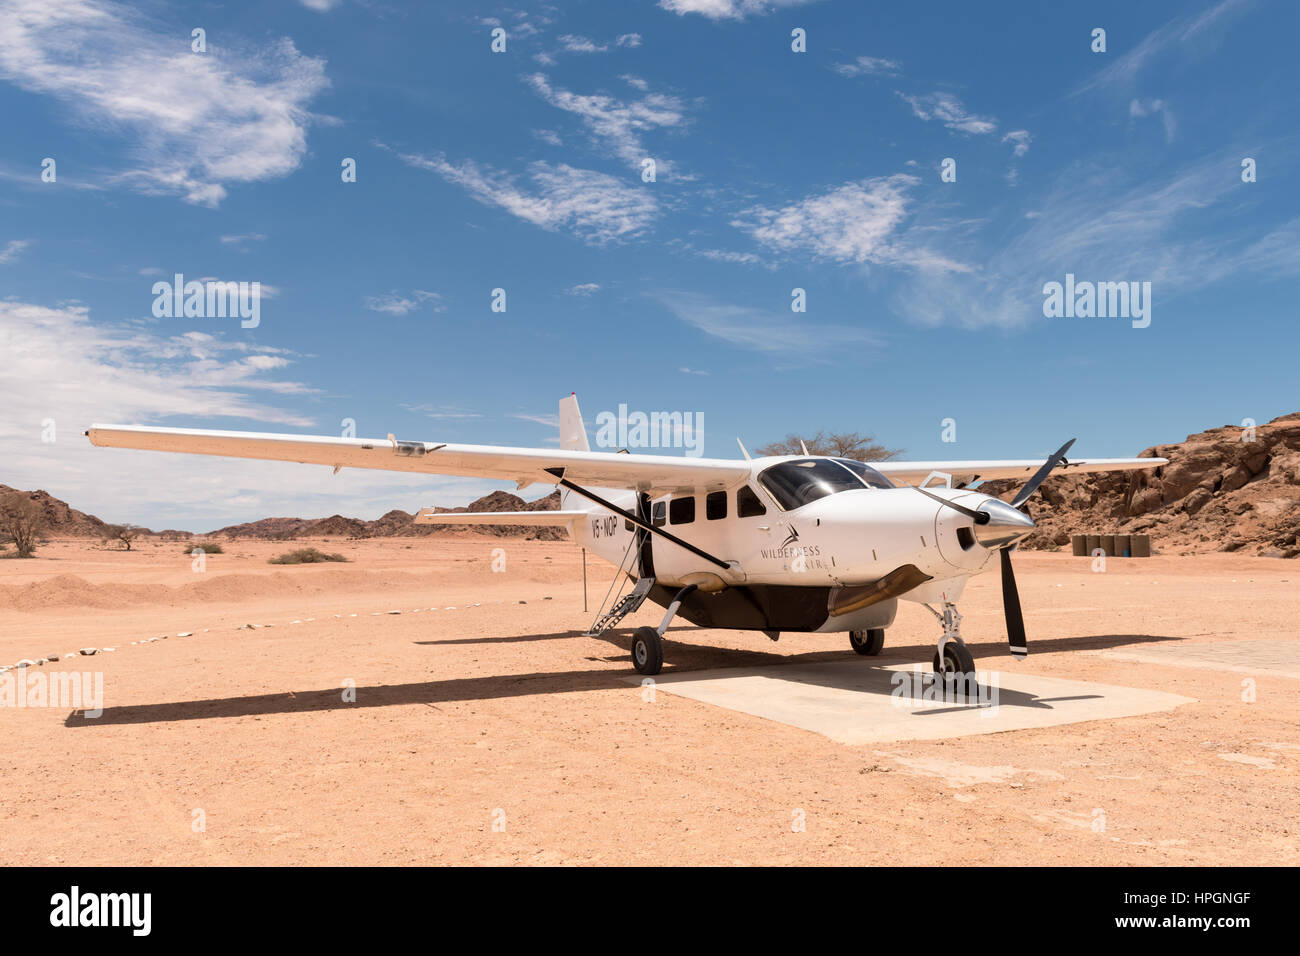 Un Cessna 208 stationnés sur l'aérodrome desservant l'Hoanib Wilderness Safaris Skeleton Coast Camp. Banque D'Images